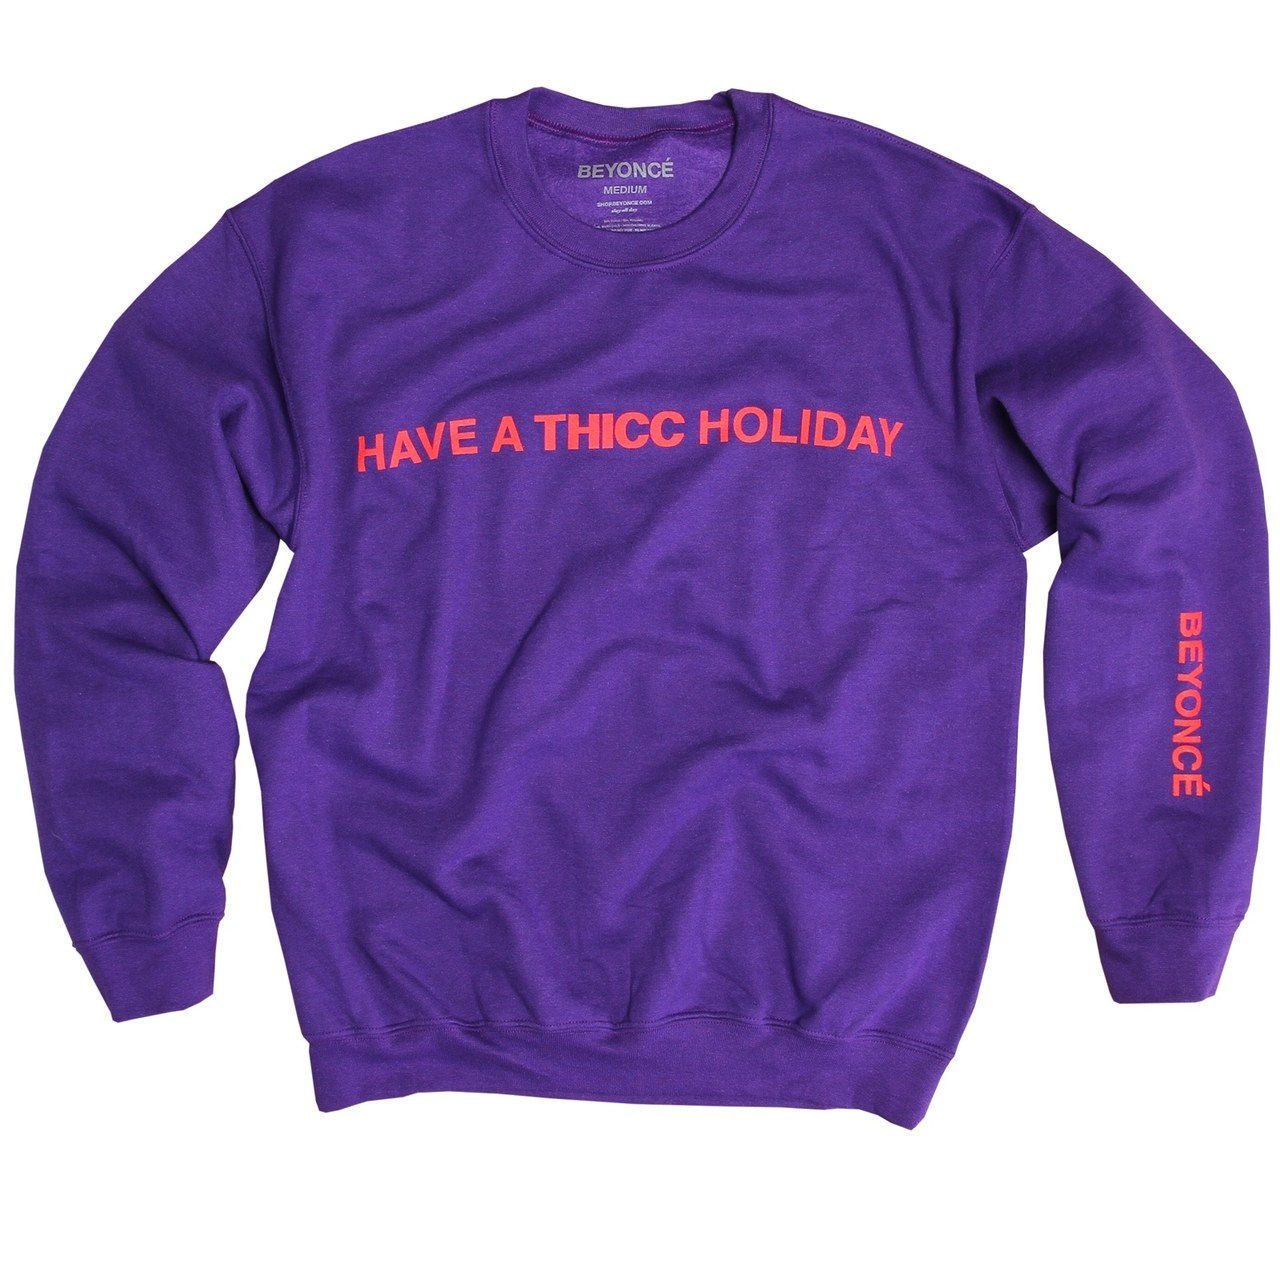 Thicc Purple Crew Neck, $55, [Beyonce.com](https://shop.beyonce.com/products/62198-thicc-purple-crewneck)